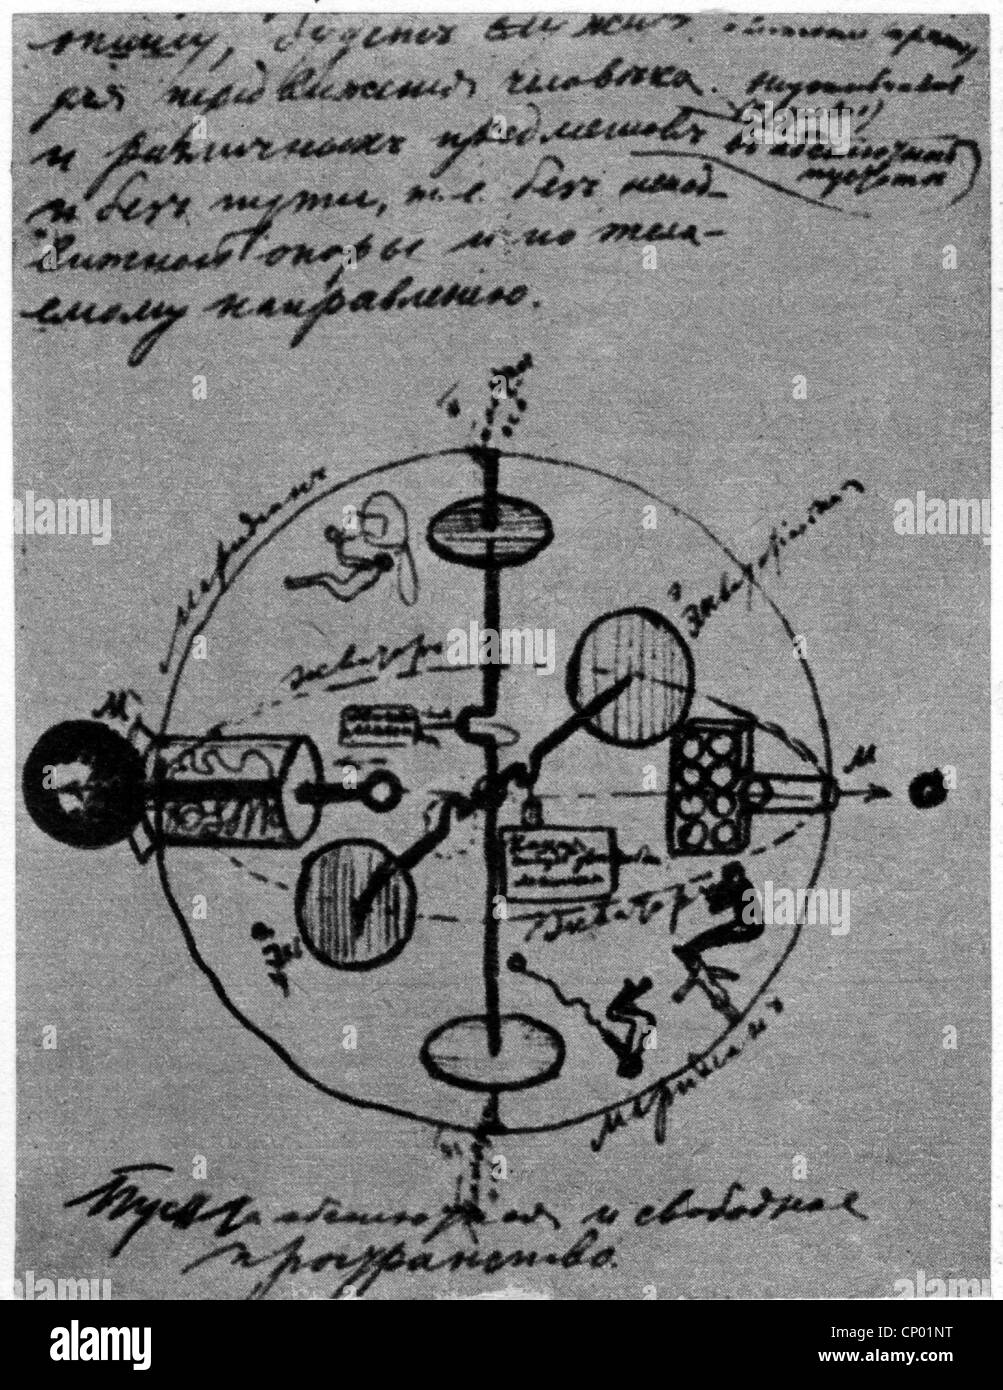 Tsiolkovskii, Konstantin Eduardovich, 17.9.1857 - 19.9.1935, physicien russe, mathématicien, croquis montrant un vaisseau spatial, Banque D'Images